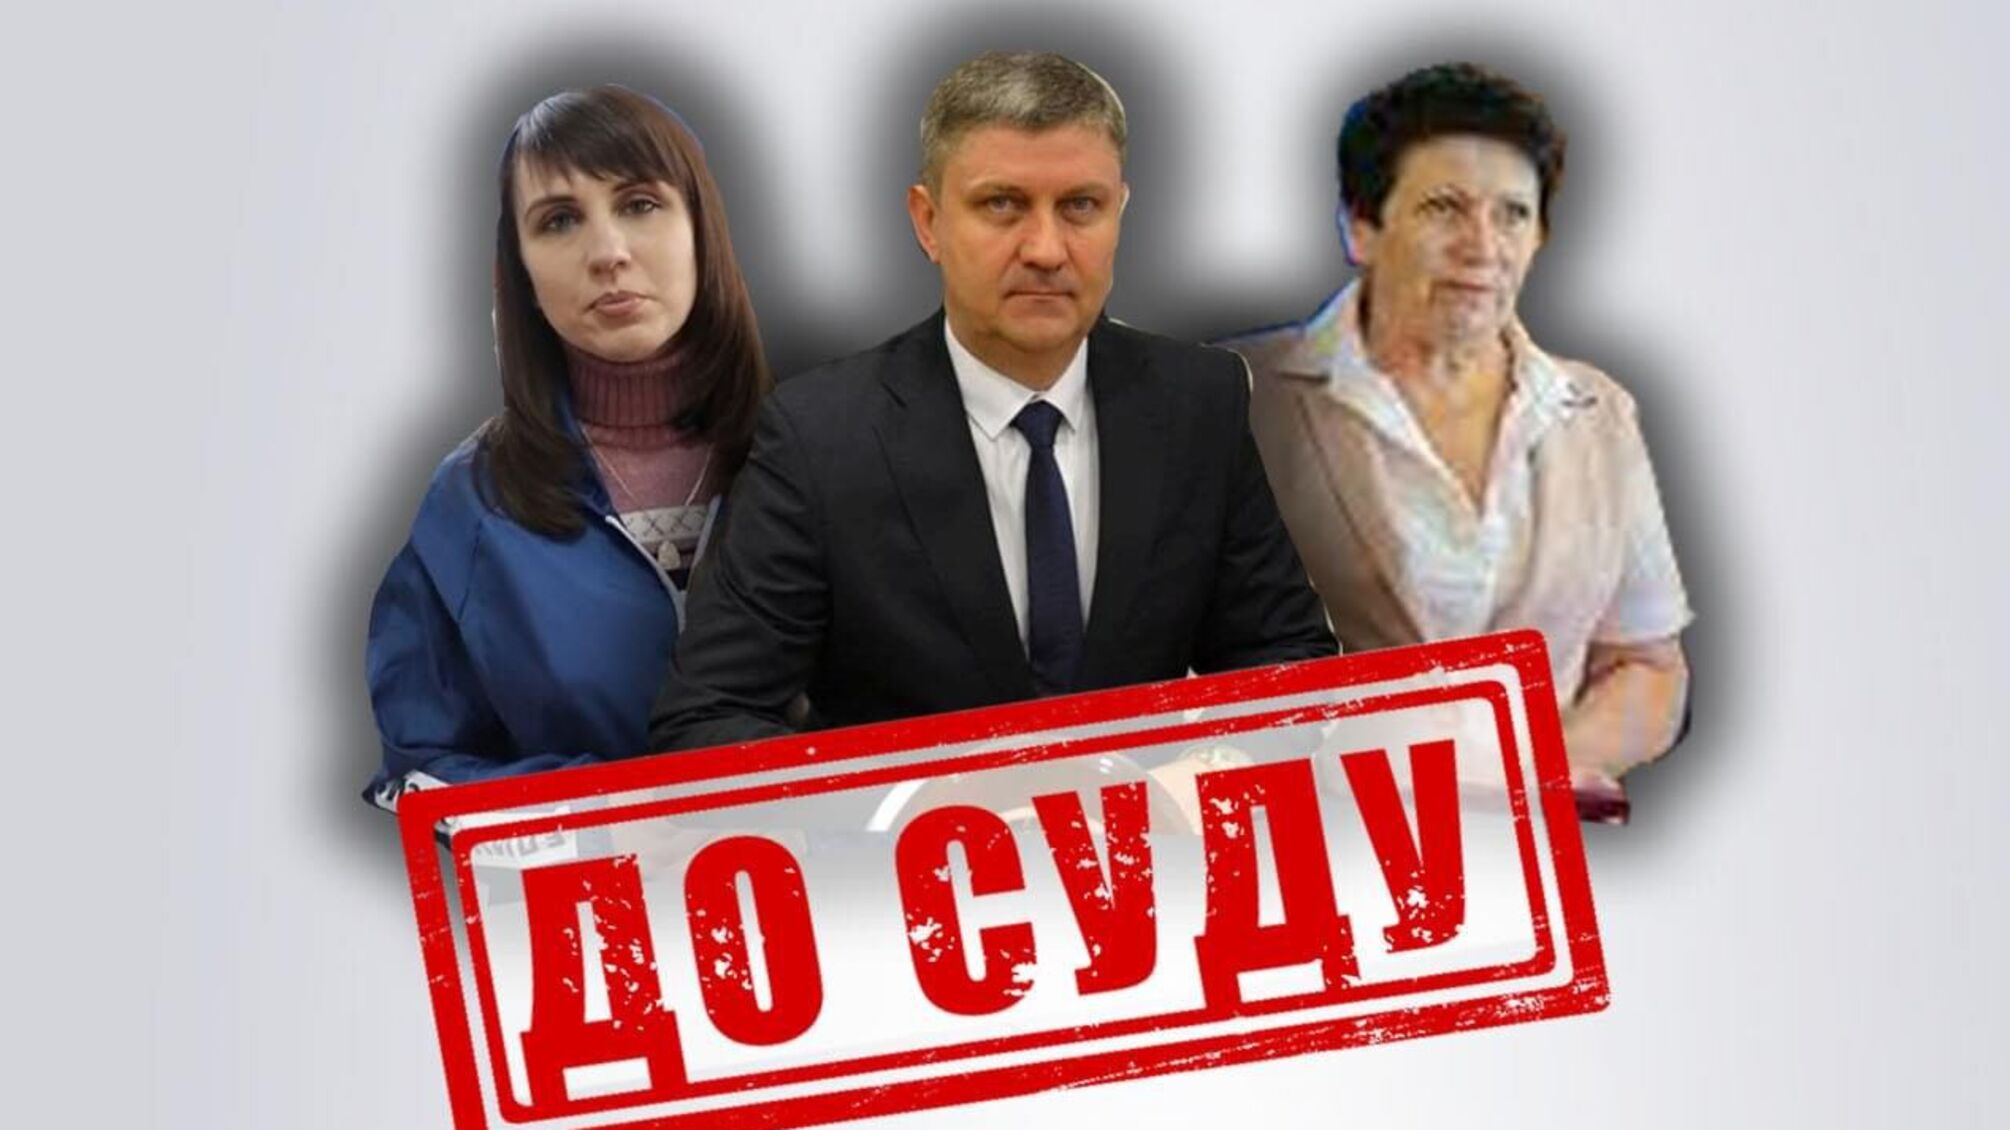 Перешли на сторону врага: до 10 лет тюрьмы грозит руководителям вражеских «органов власти» в Луганской области